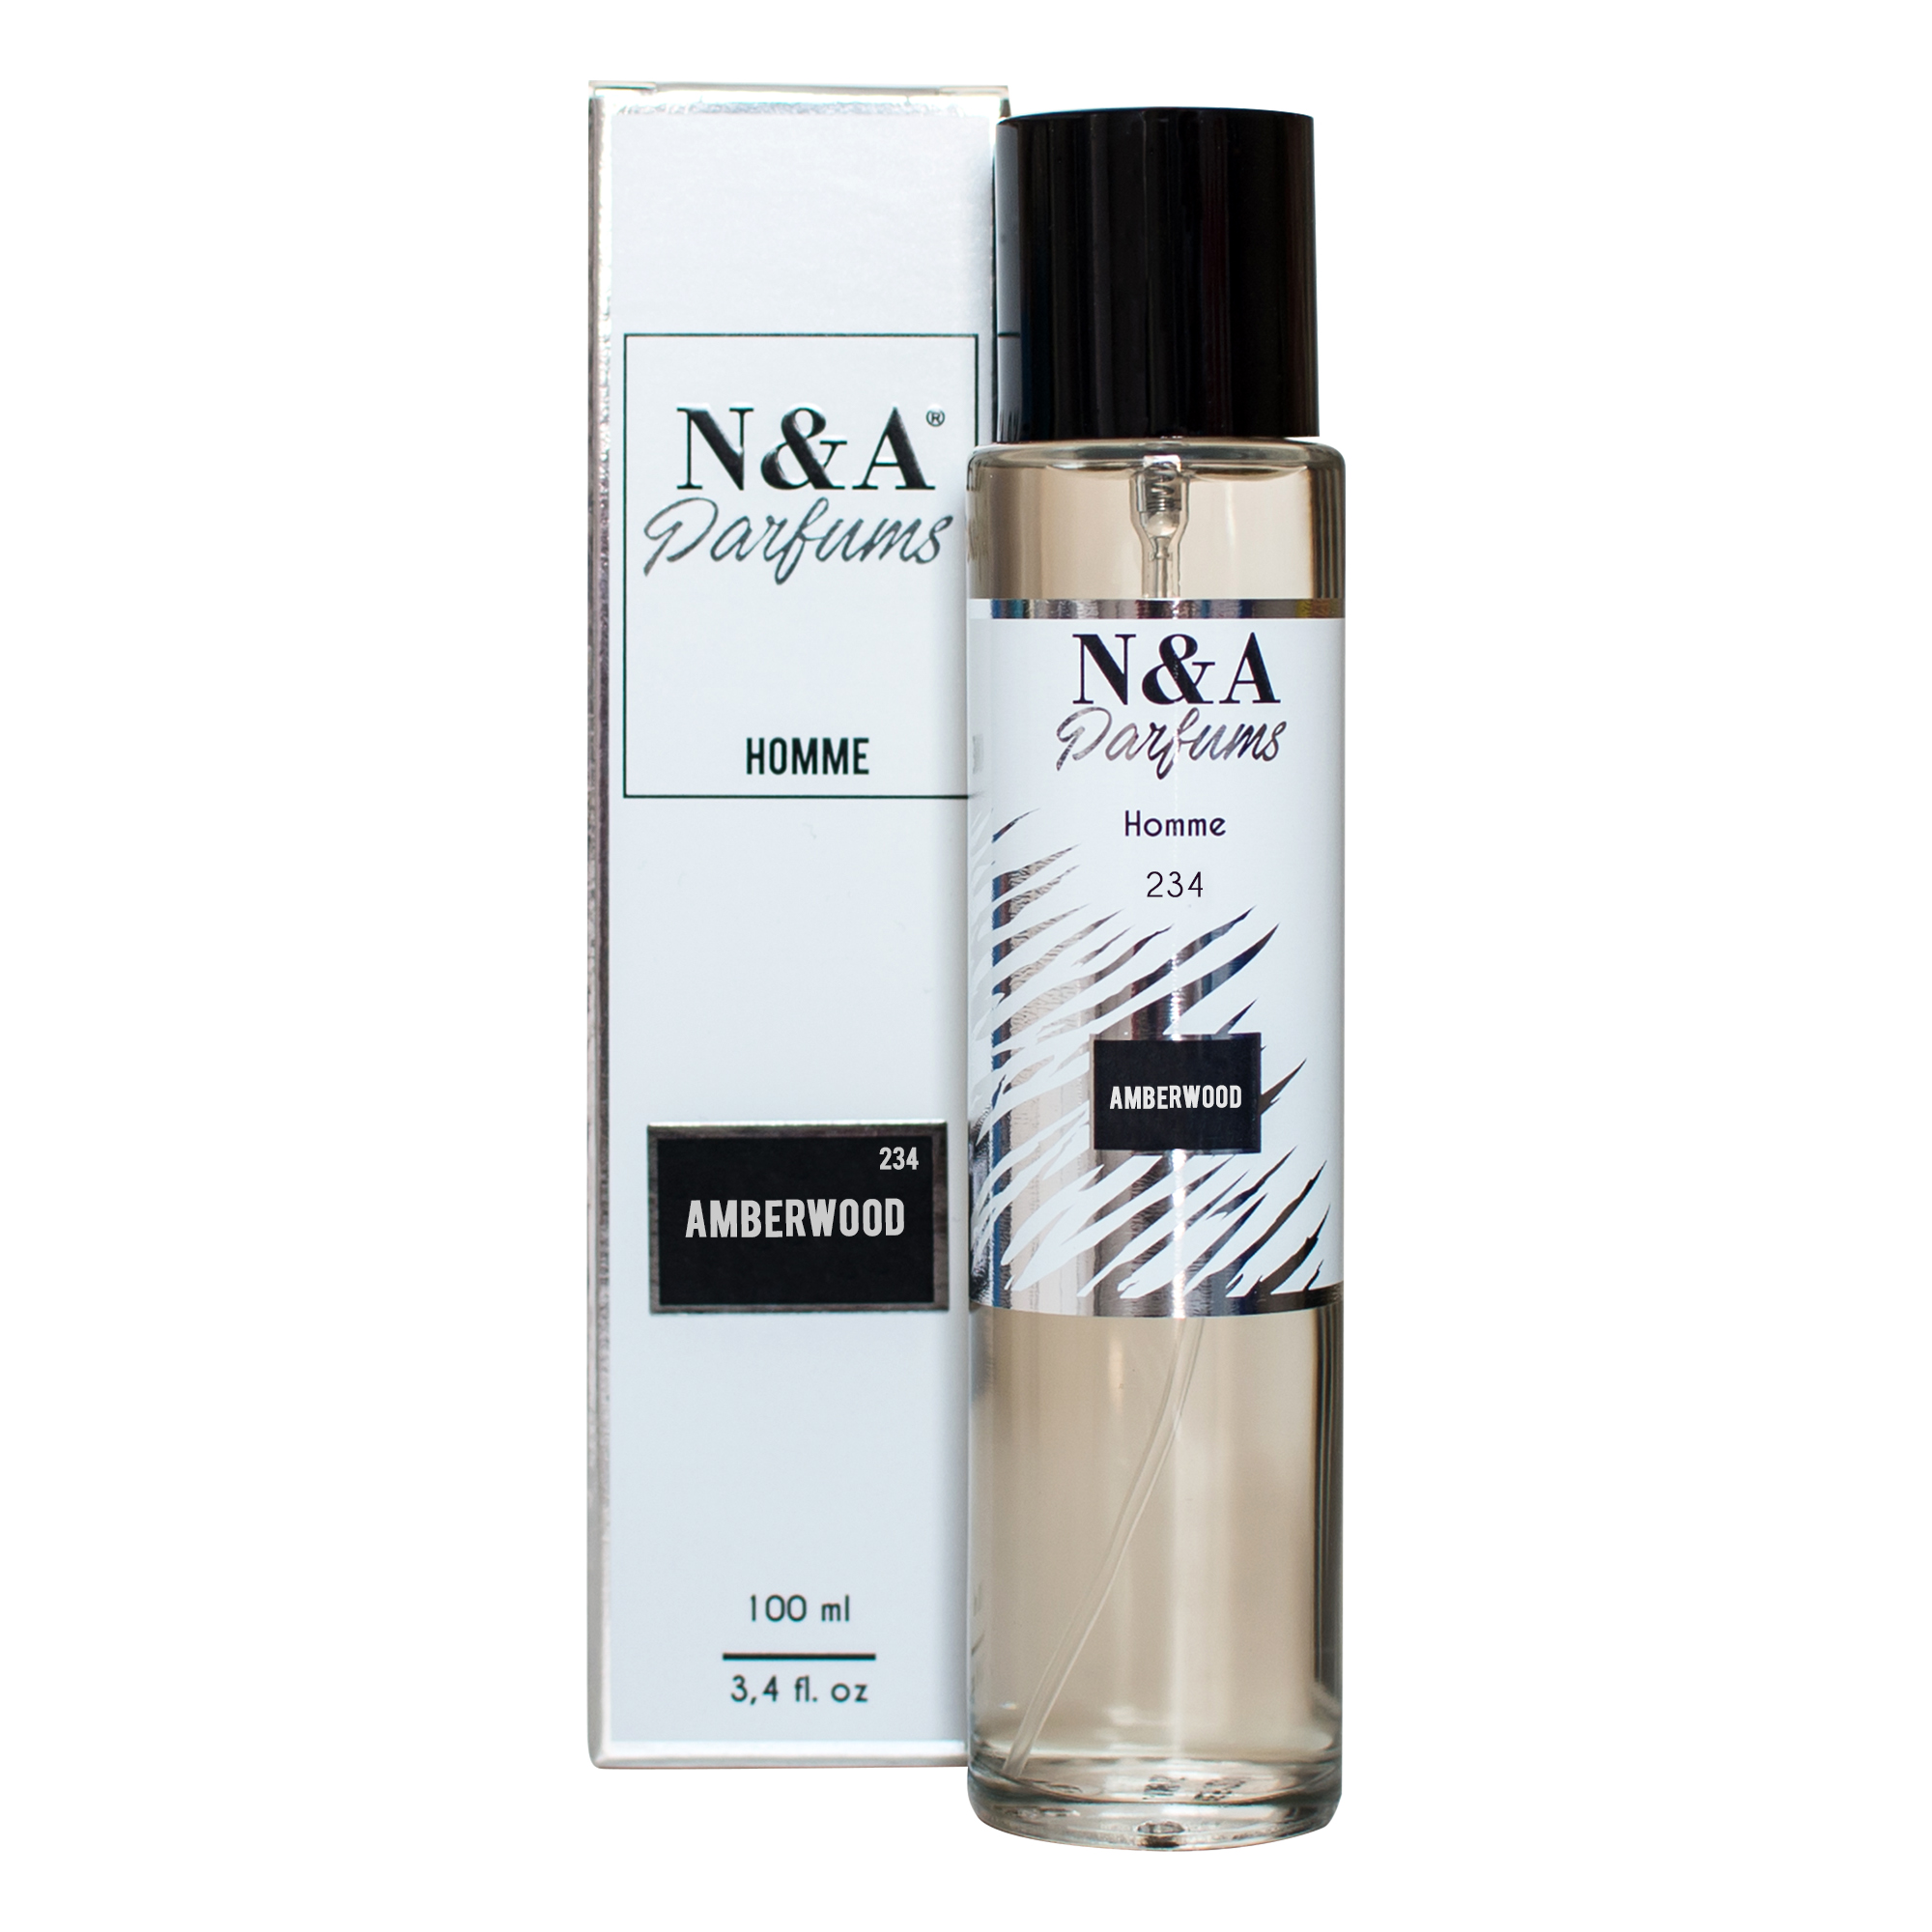 Perfume N&A 234 100ml - Se Gosta de GIORGIO ARMANI EMPORIO YOU experimente a Nossa Fragrância